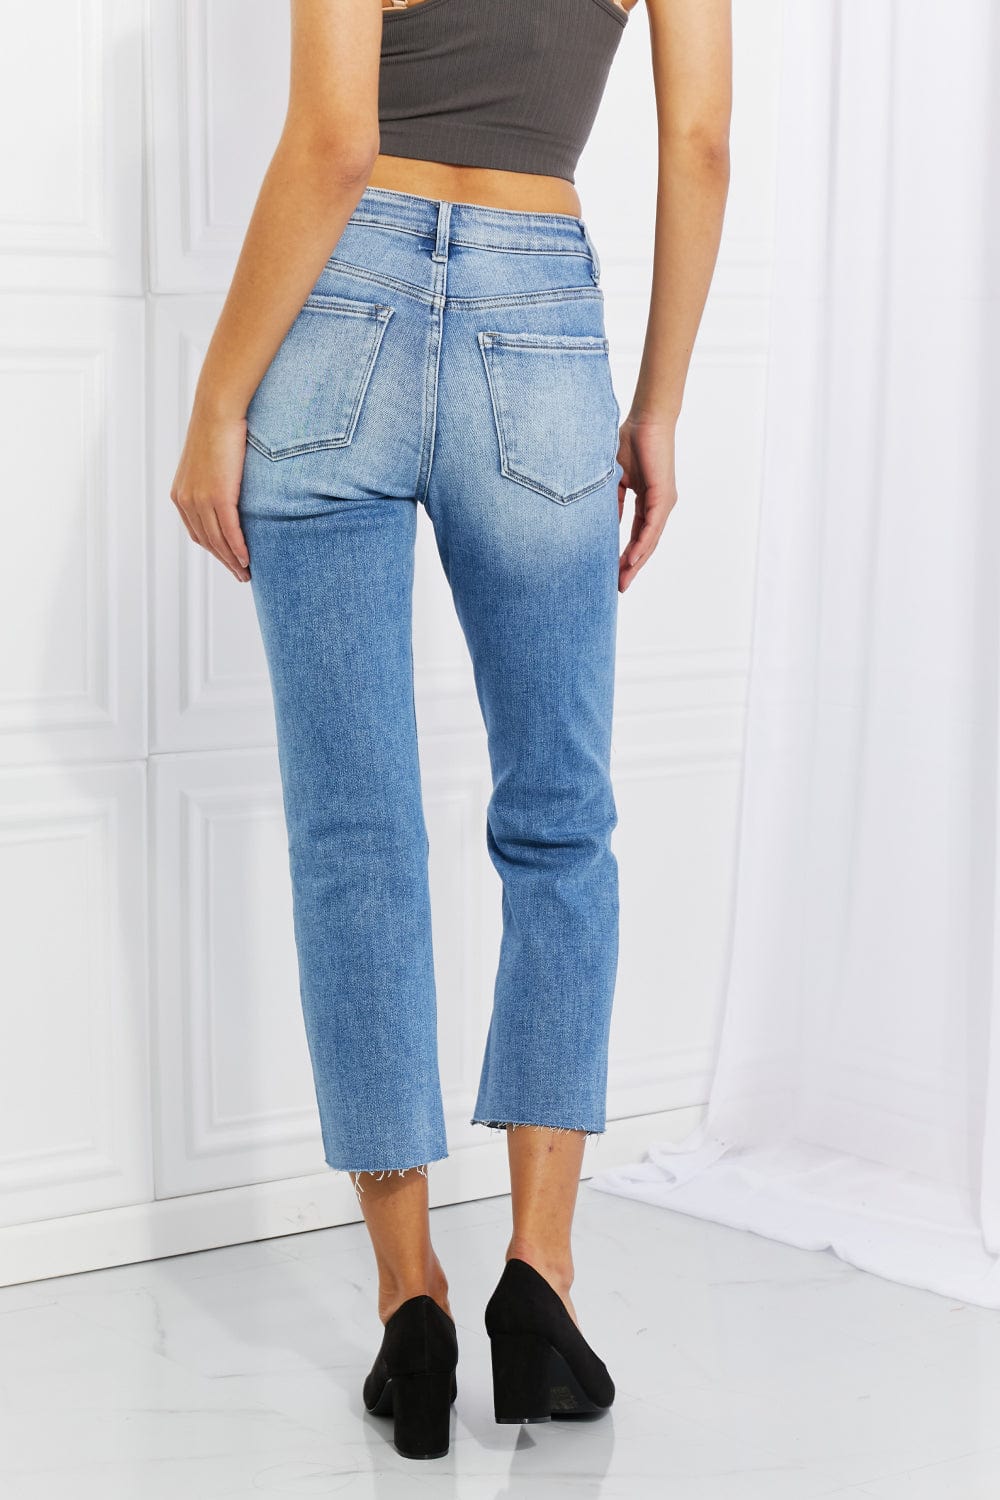 Lovervet Brynne Full Size High Rise Slim Straight - Jeans